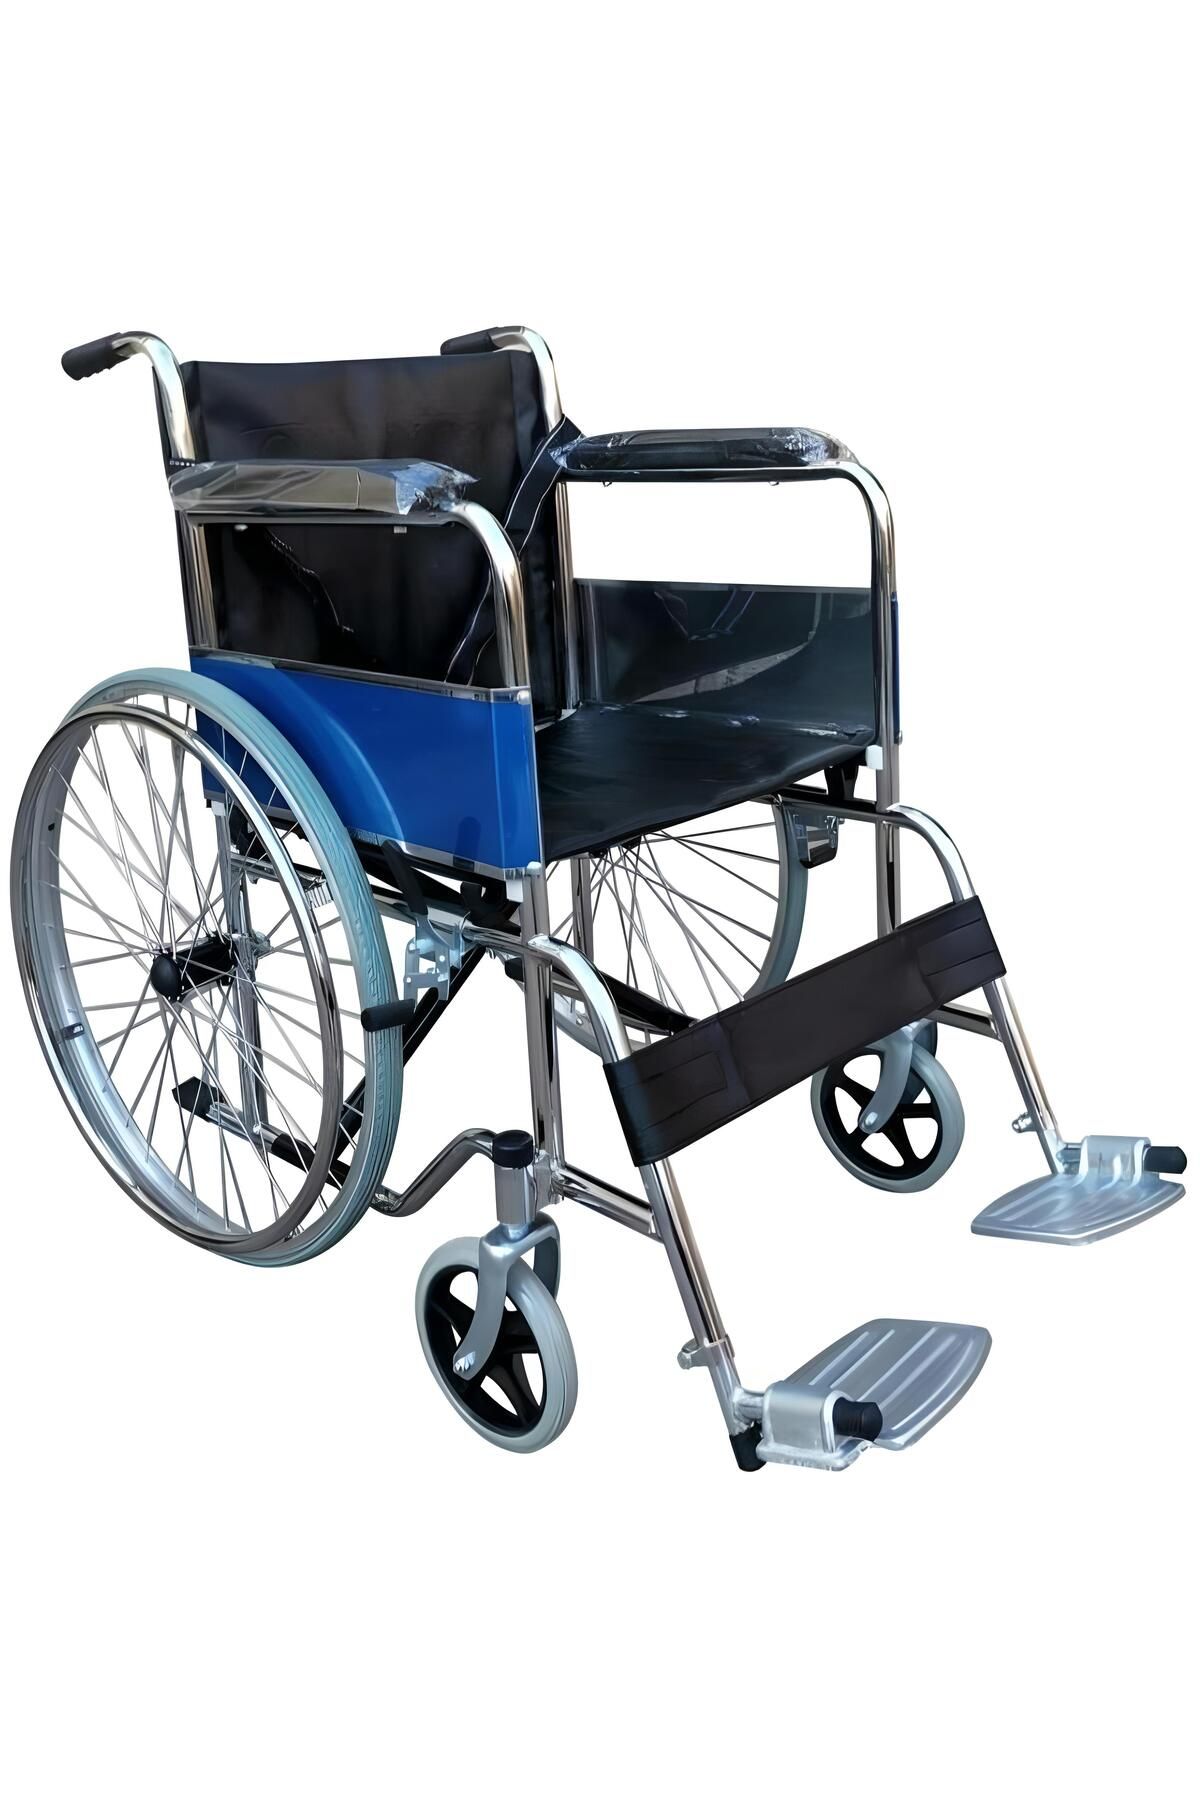 FUHASSAN FH01 Manuel Tekerlekli Sandalye Deri Kılıf ve Krom Ayaklık